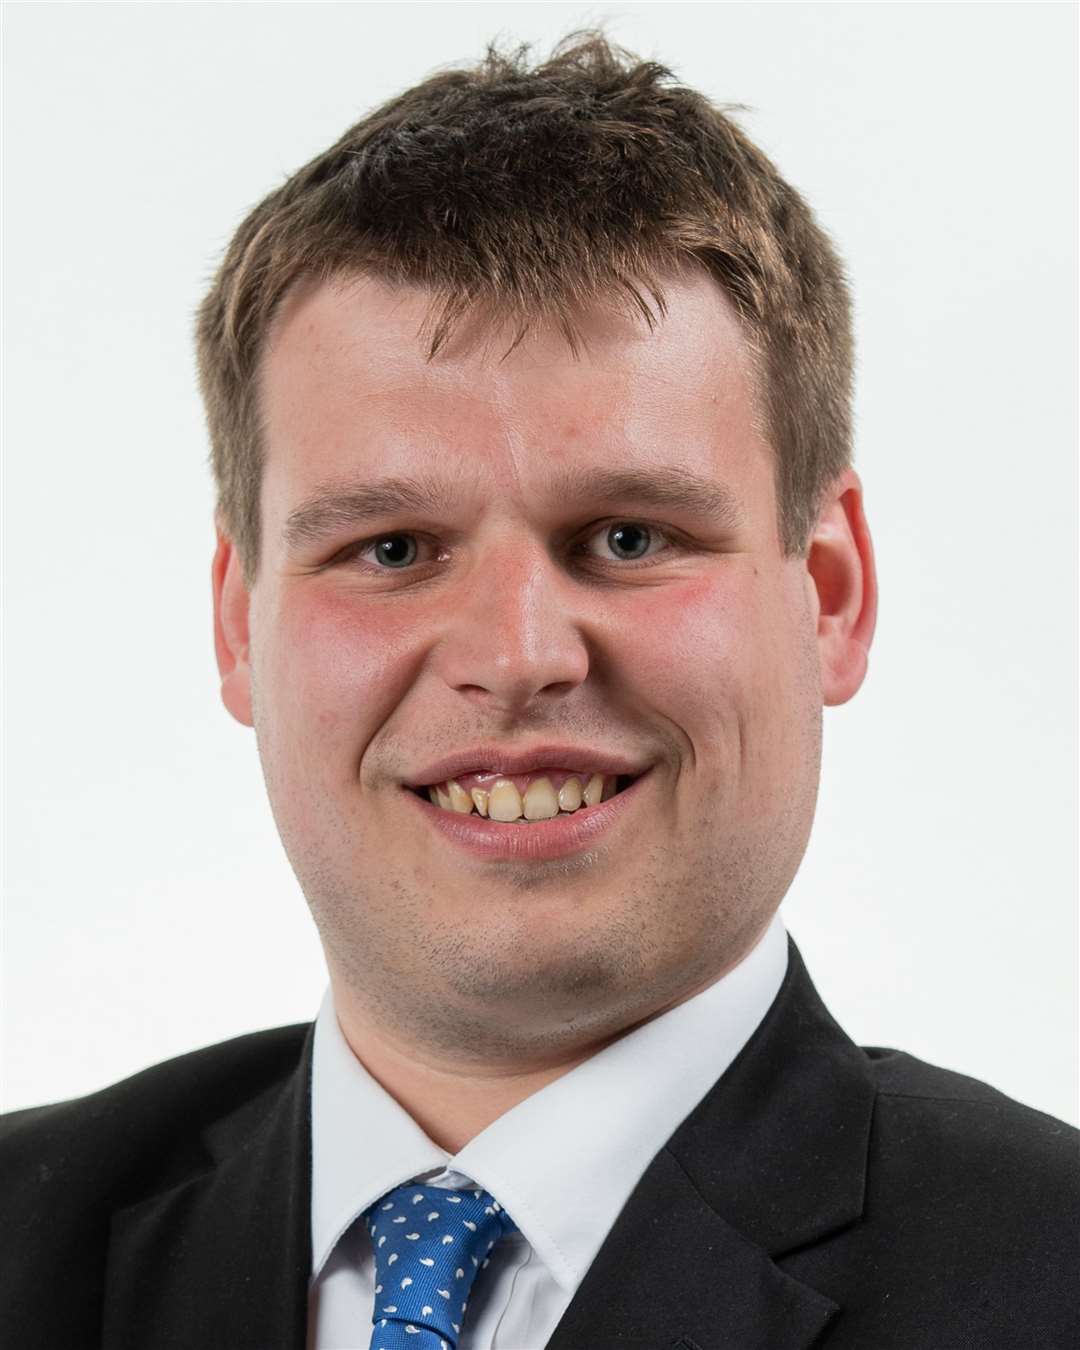 Council leader Matt Boughton